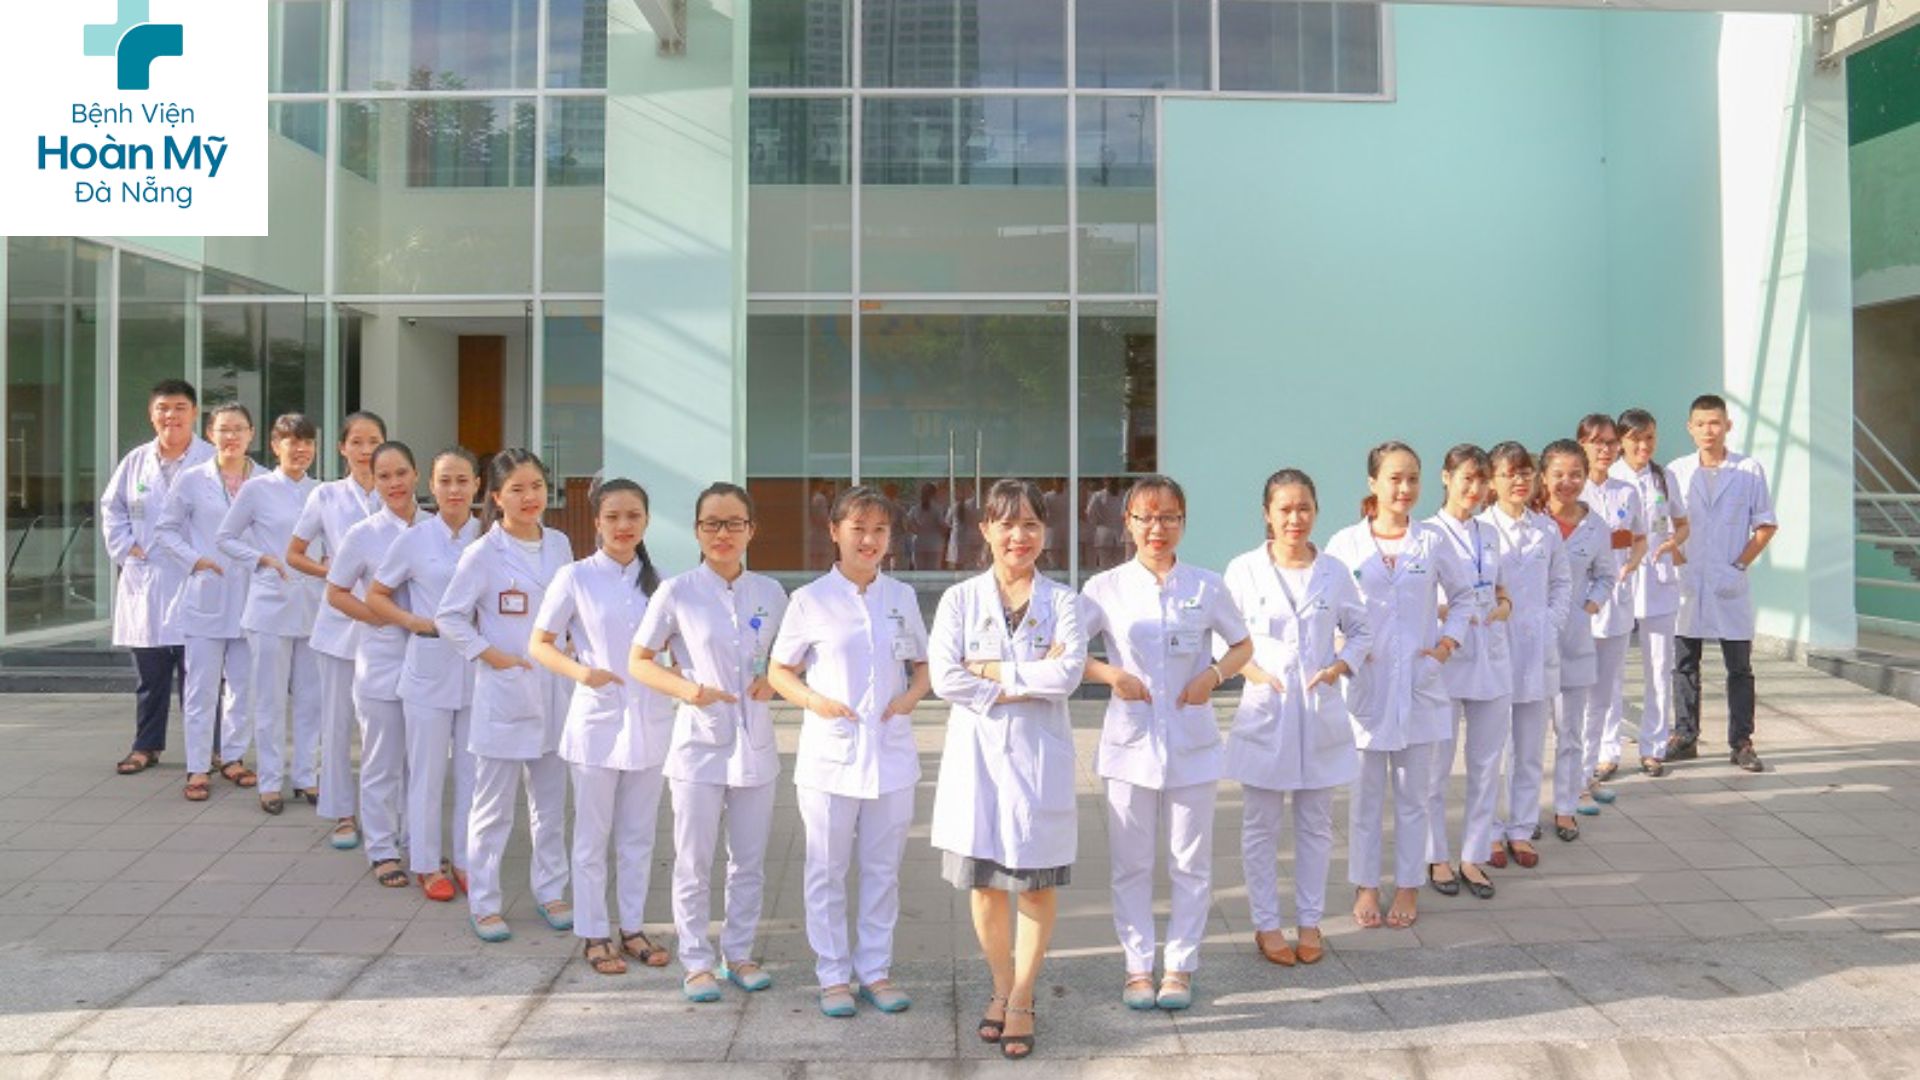 Bệnh Viện Hoàn Mỹ - Bệnh viện tốt tại Đà Nẵng